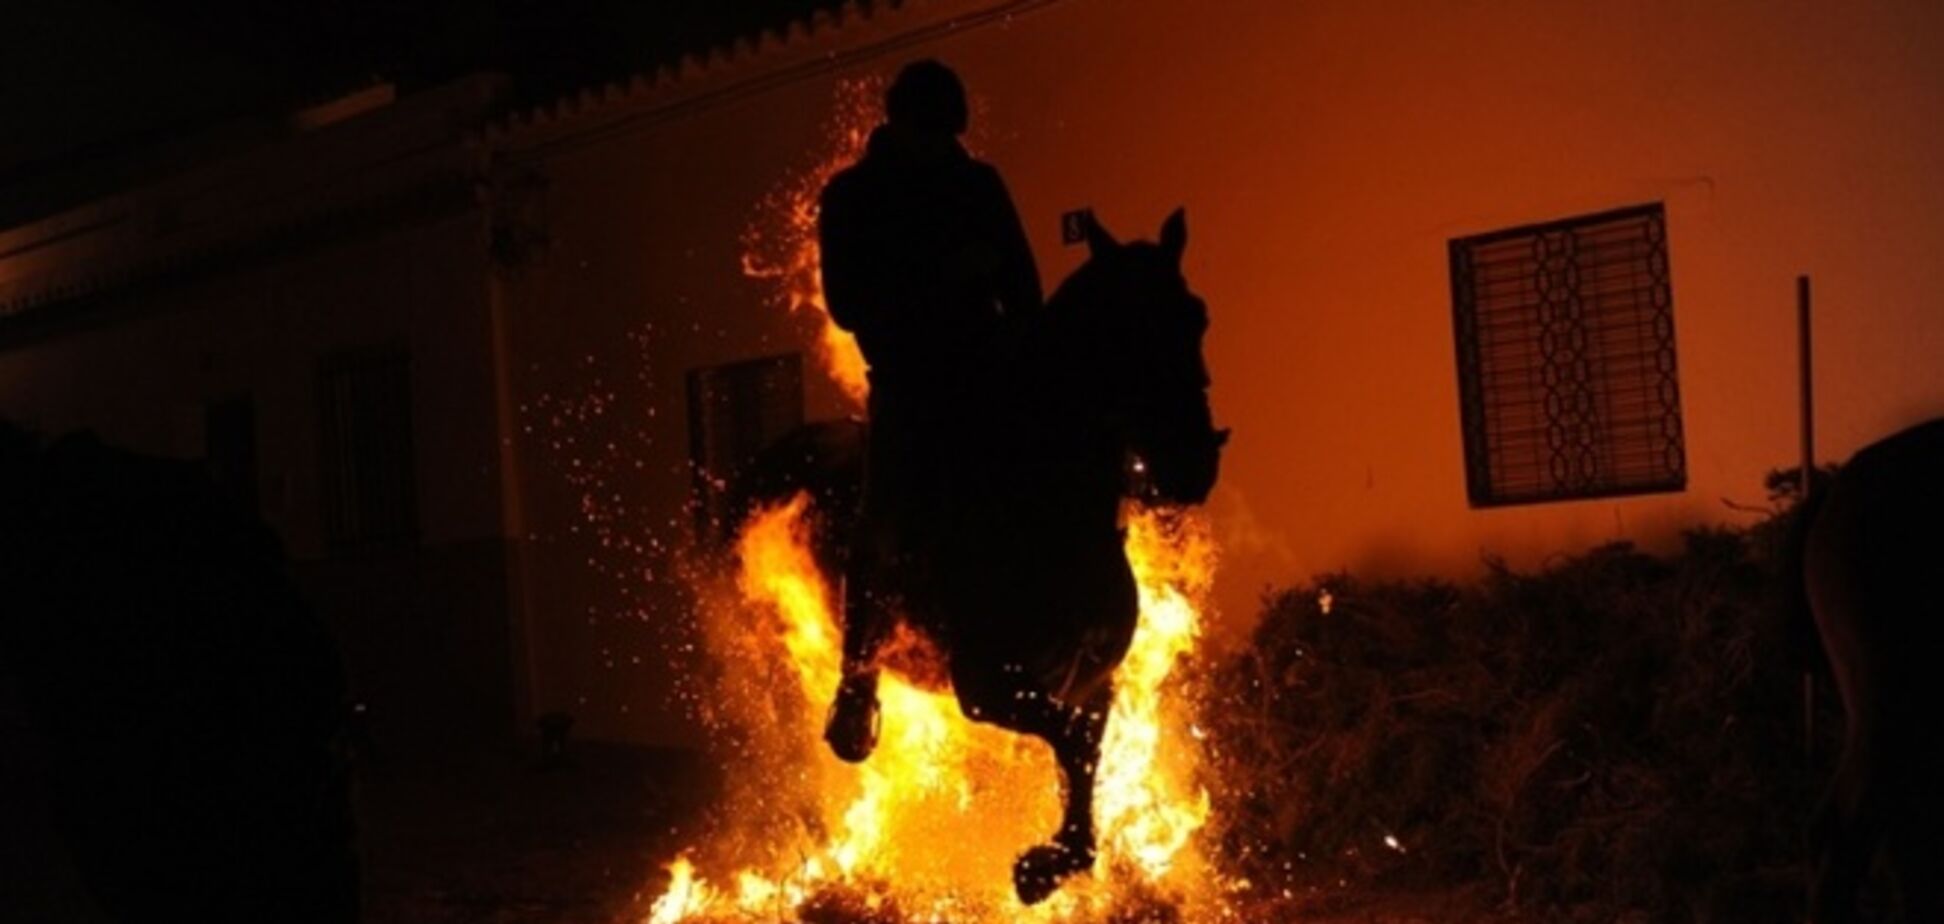 Сквозь огонь! В Испании проходит невероятный фестиваль: фотофакт